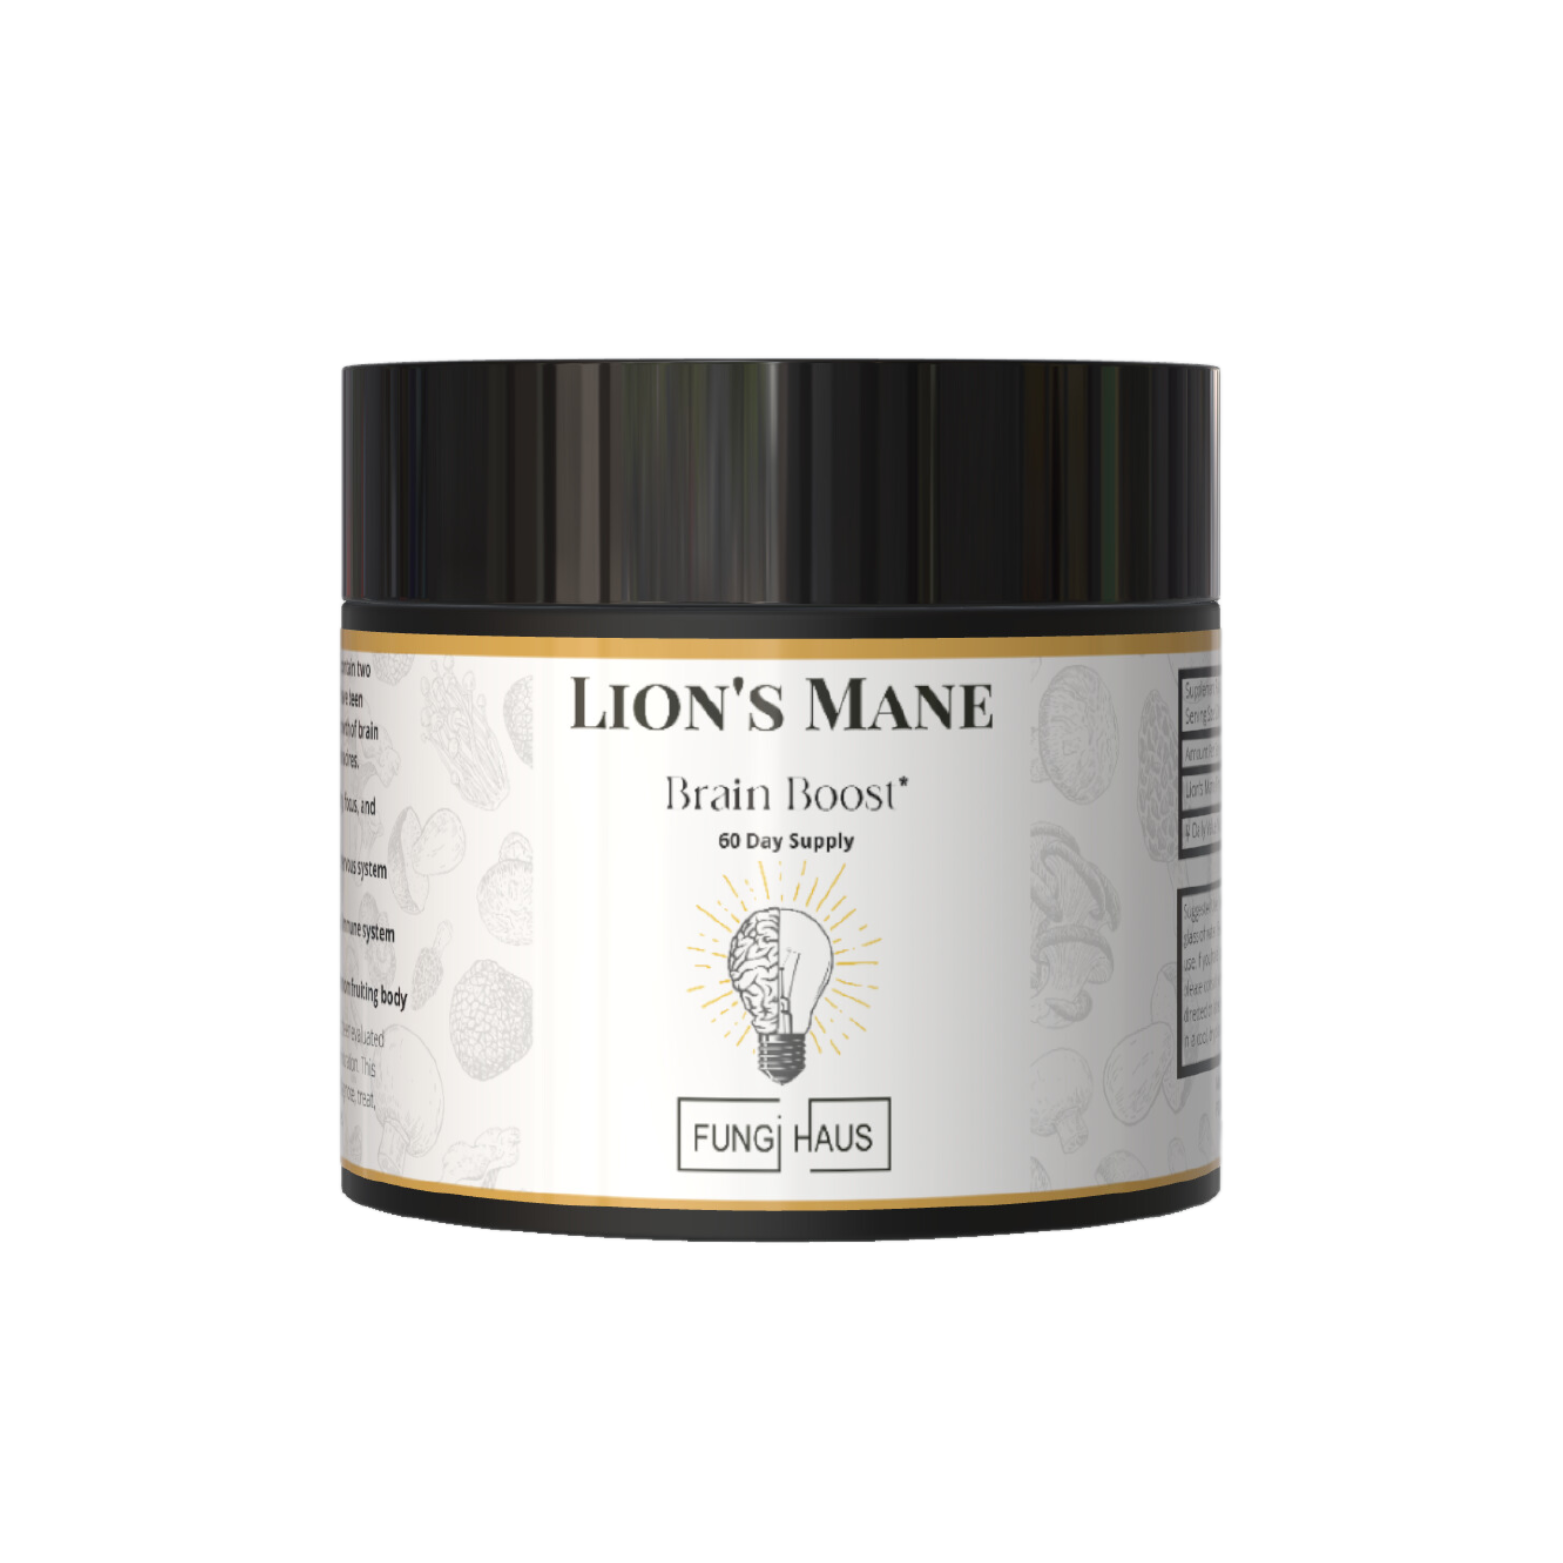 Lion's Mane Brain Boost* - 60 Day Supply - Powder